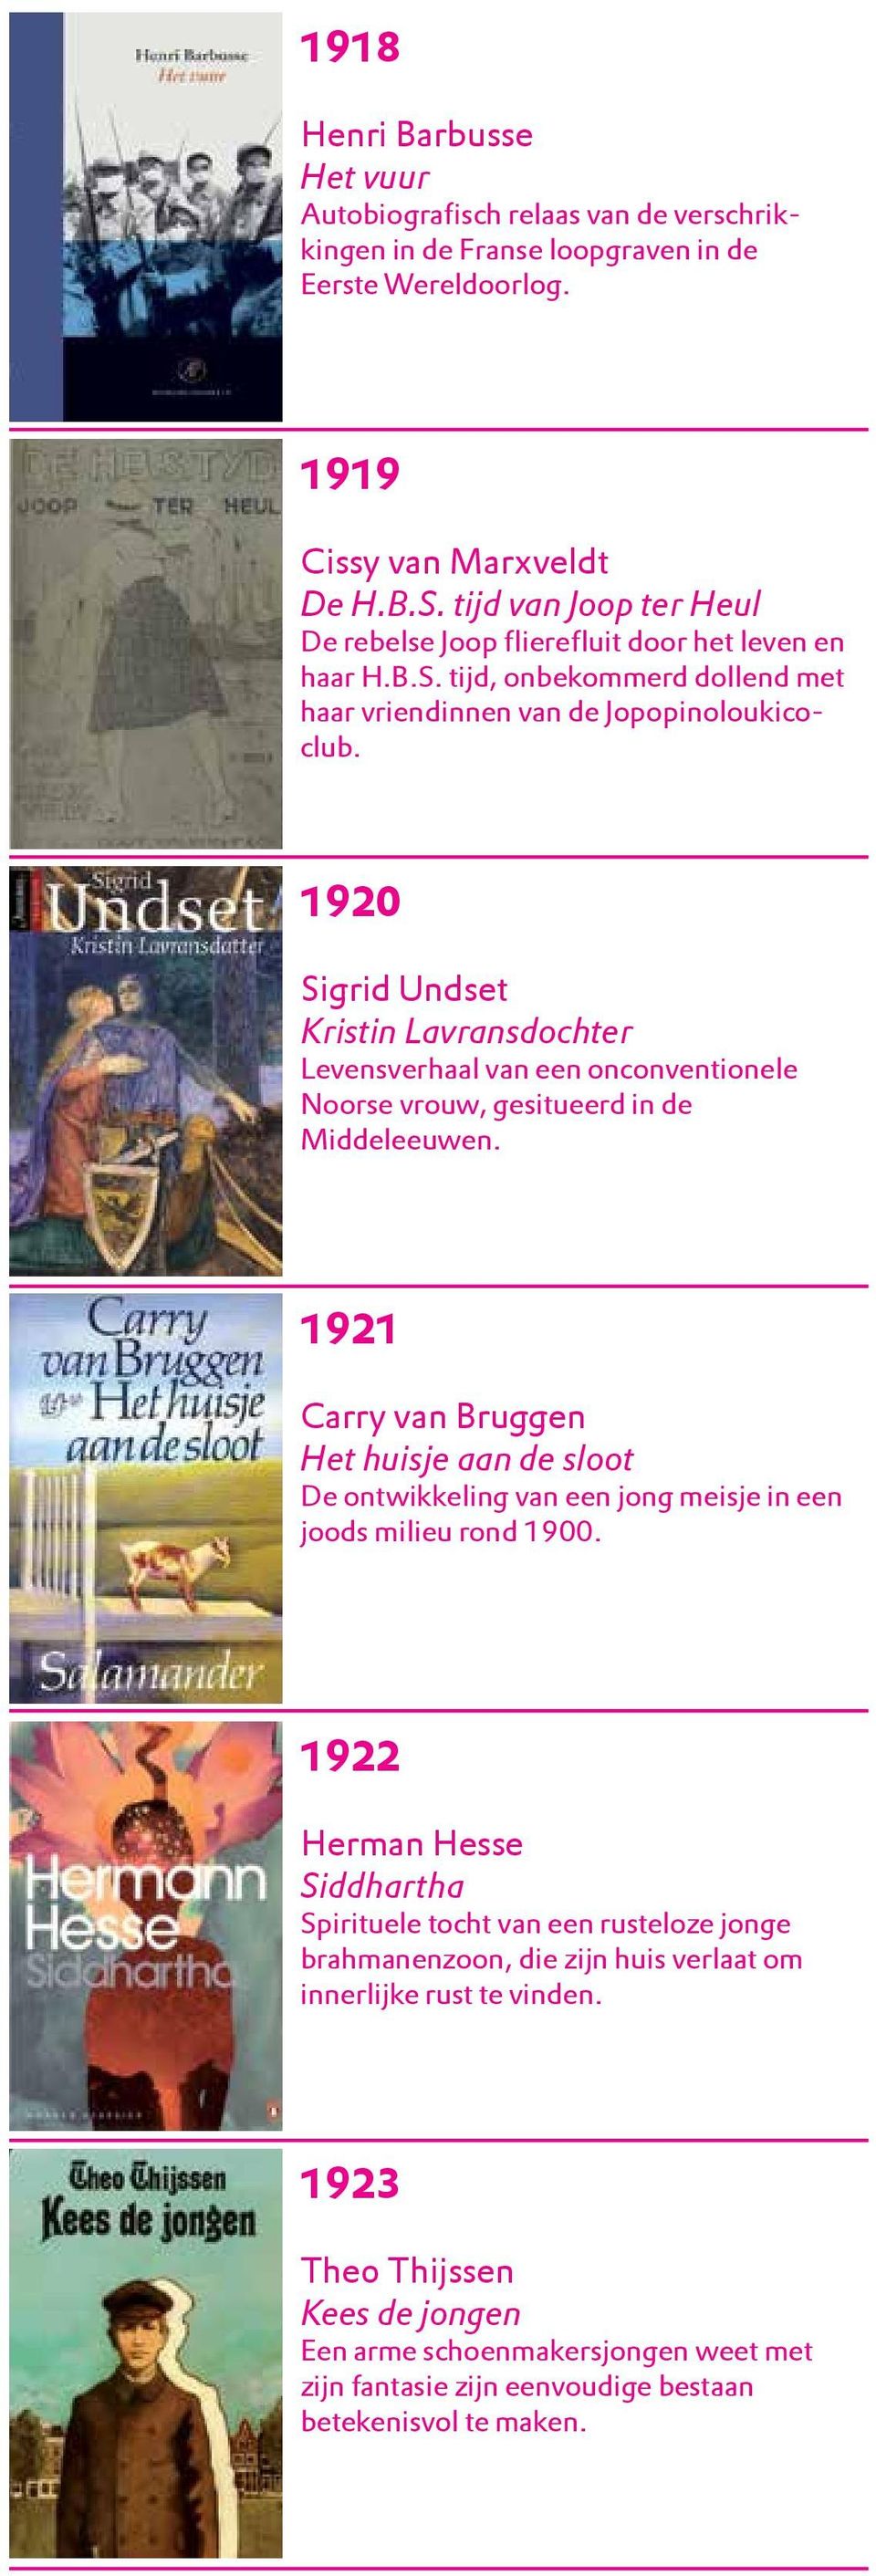 1920 Sigrid Undset Kristin Lavransdochter Levensverhaal van een onconventionele Noorse vrouw, gesitueerd in de Middeleeuwen.